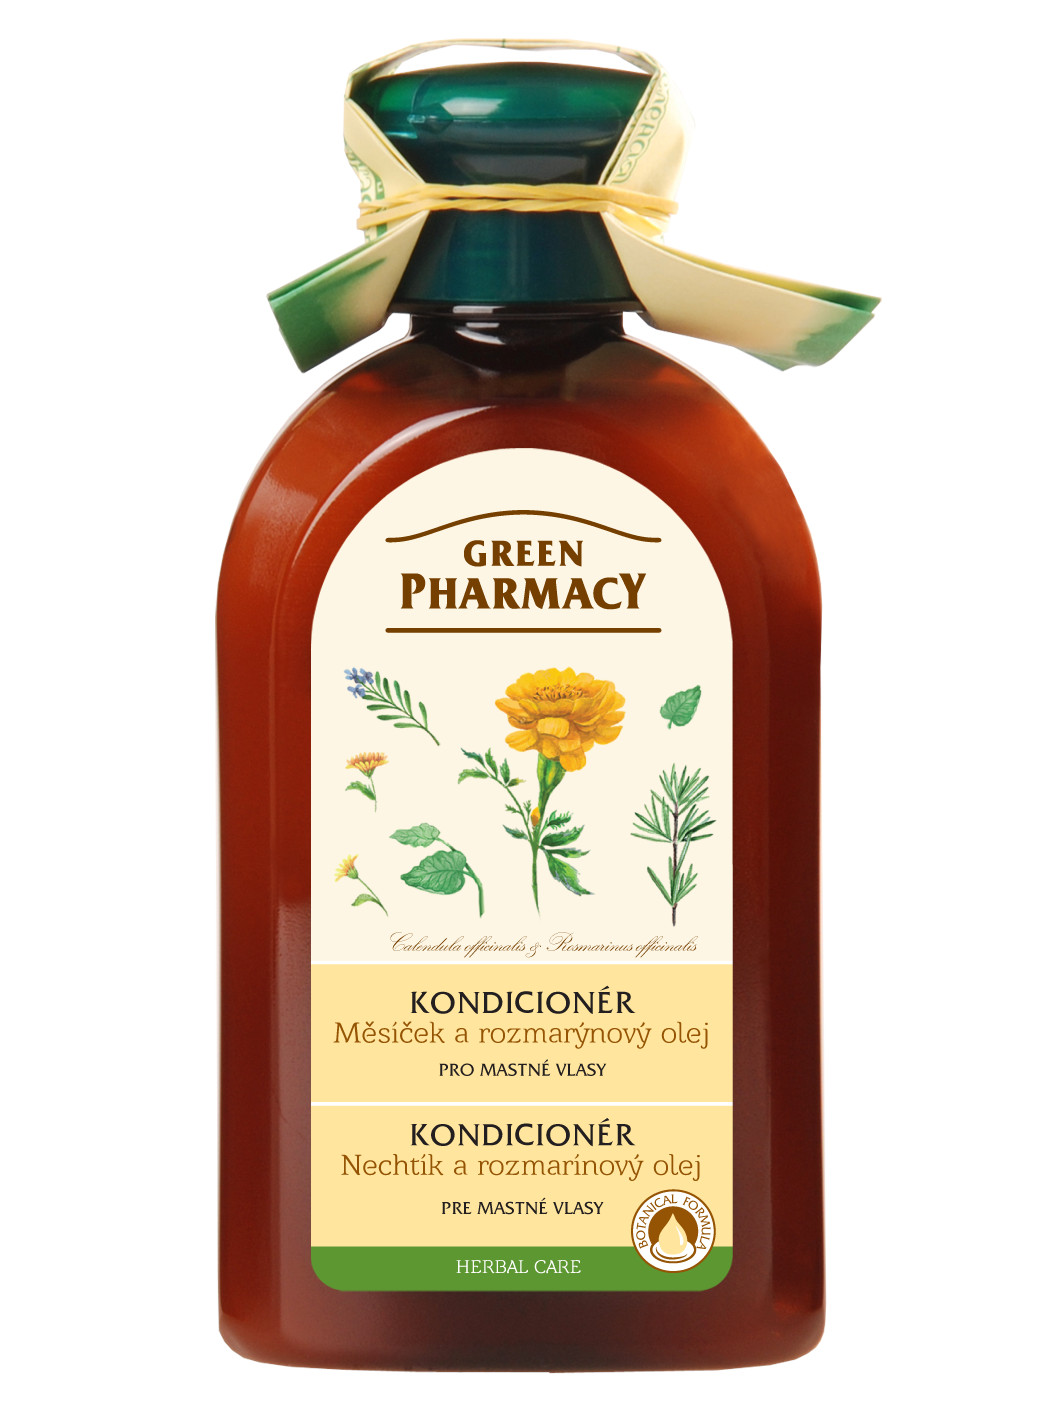 Kondicionér pro mastné vlasy s rozmarýnovým olejem Green Pharmacy - 300 ml